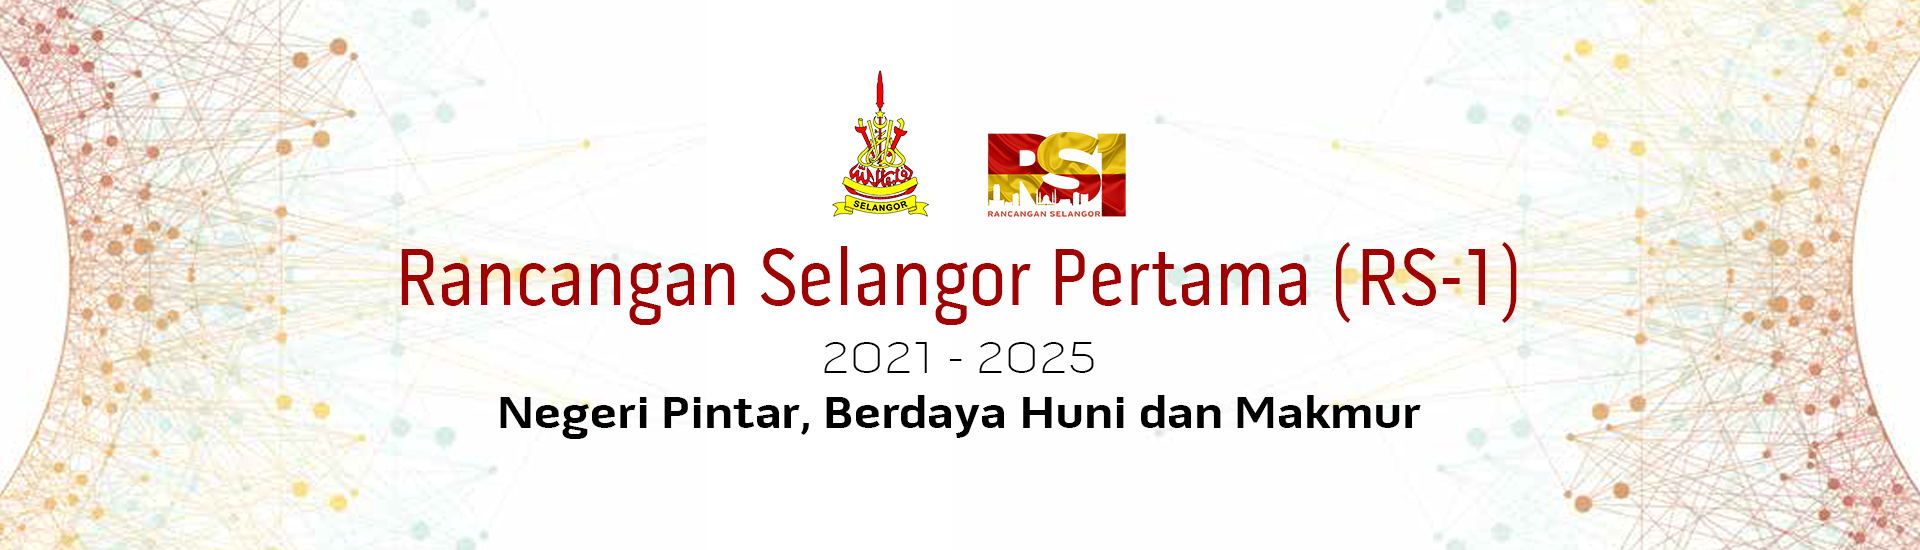 Rancangan Selangor Pertama